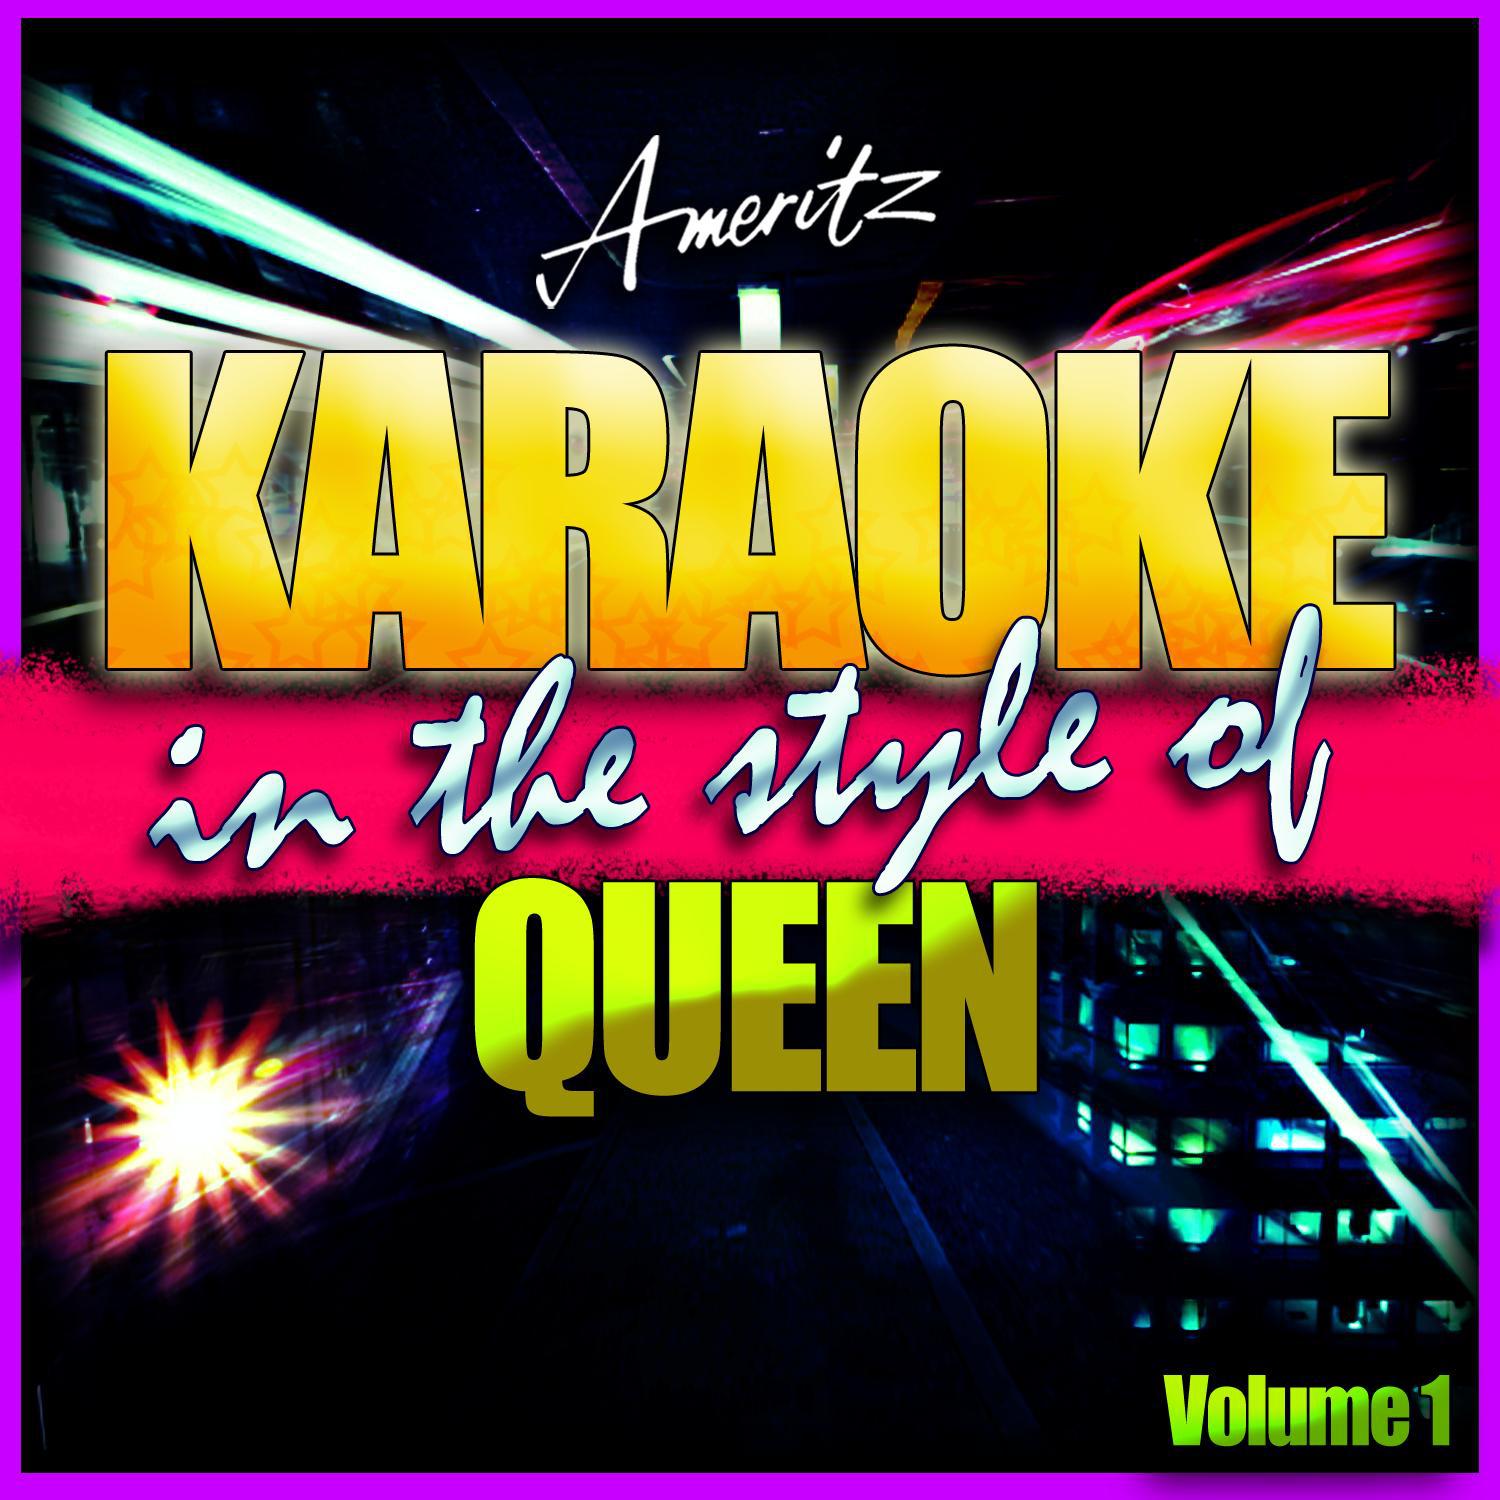 Karaoke - Queen Vol. 1